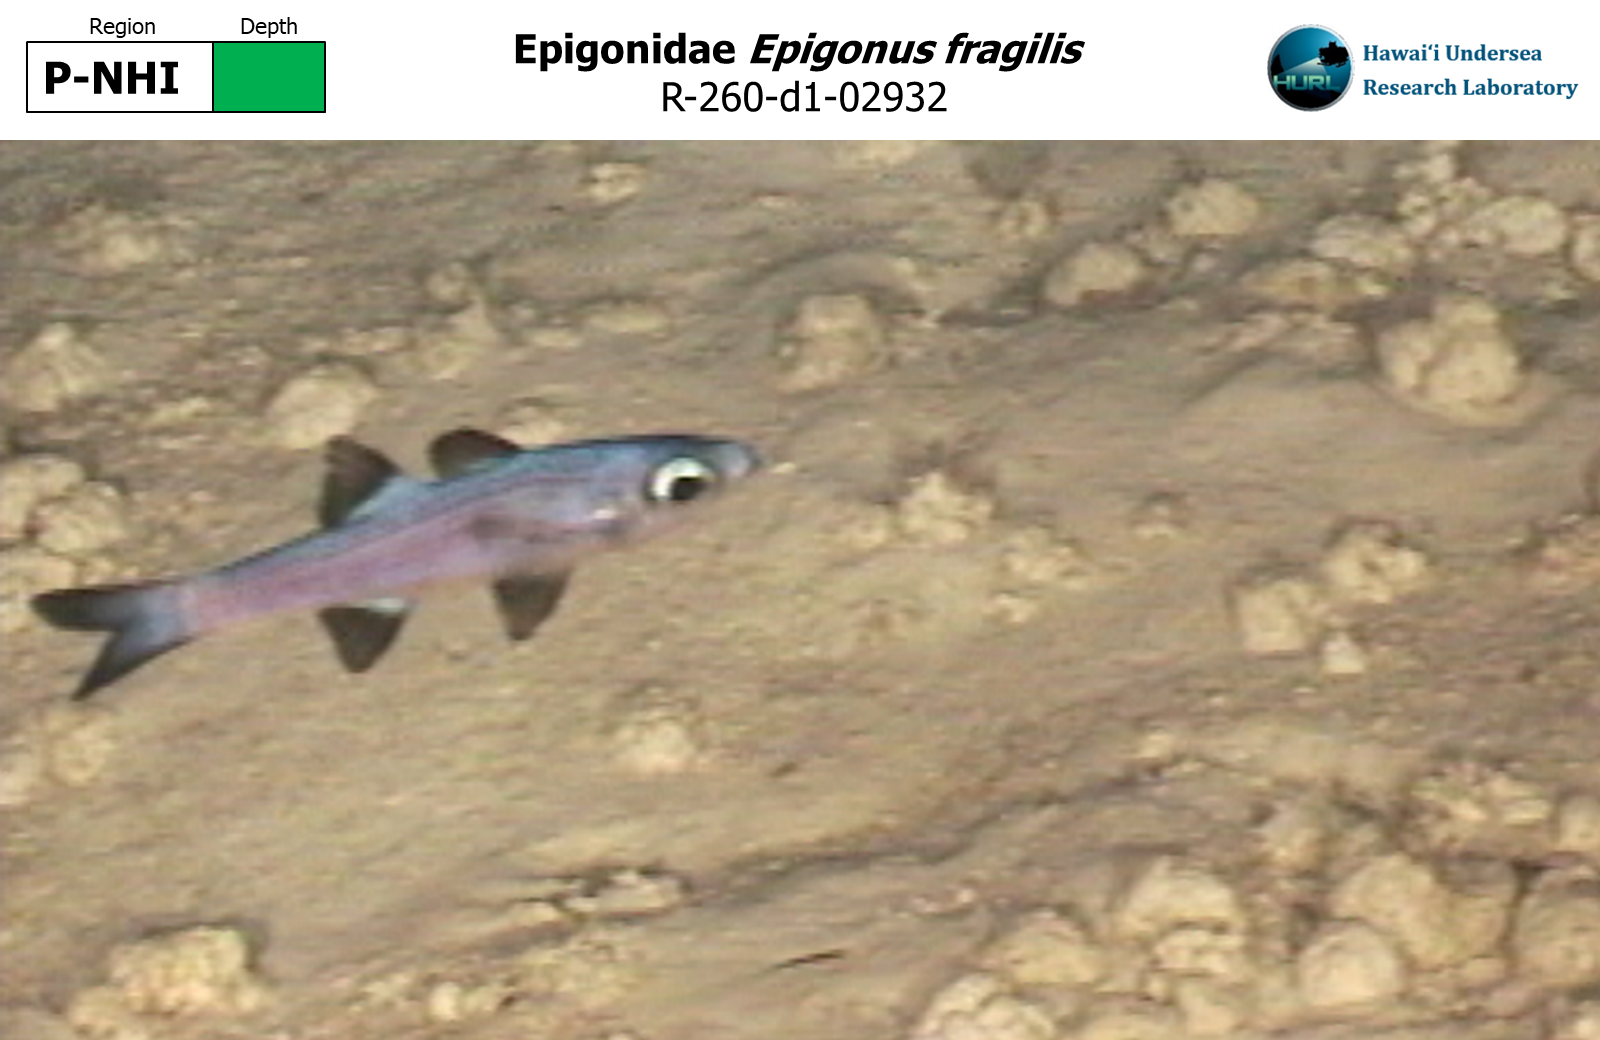 Epigonus fragilis